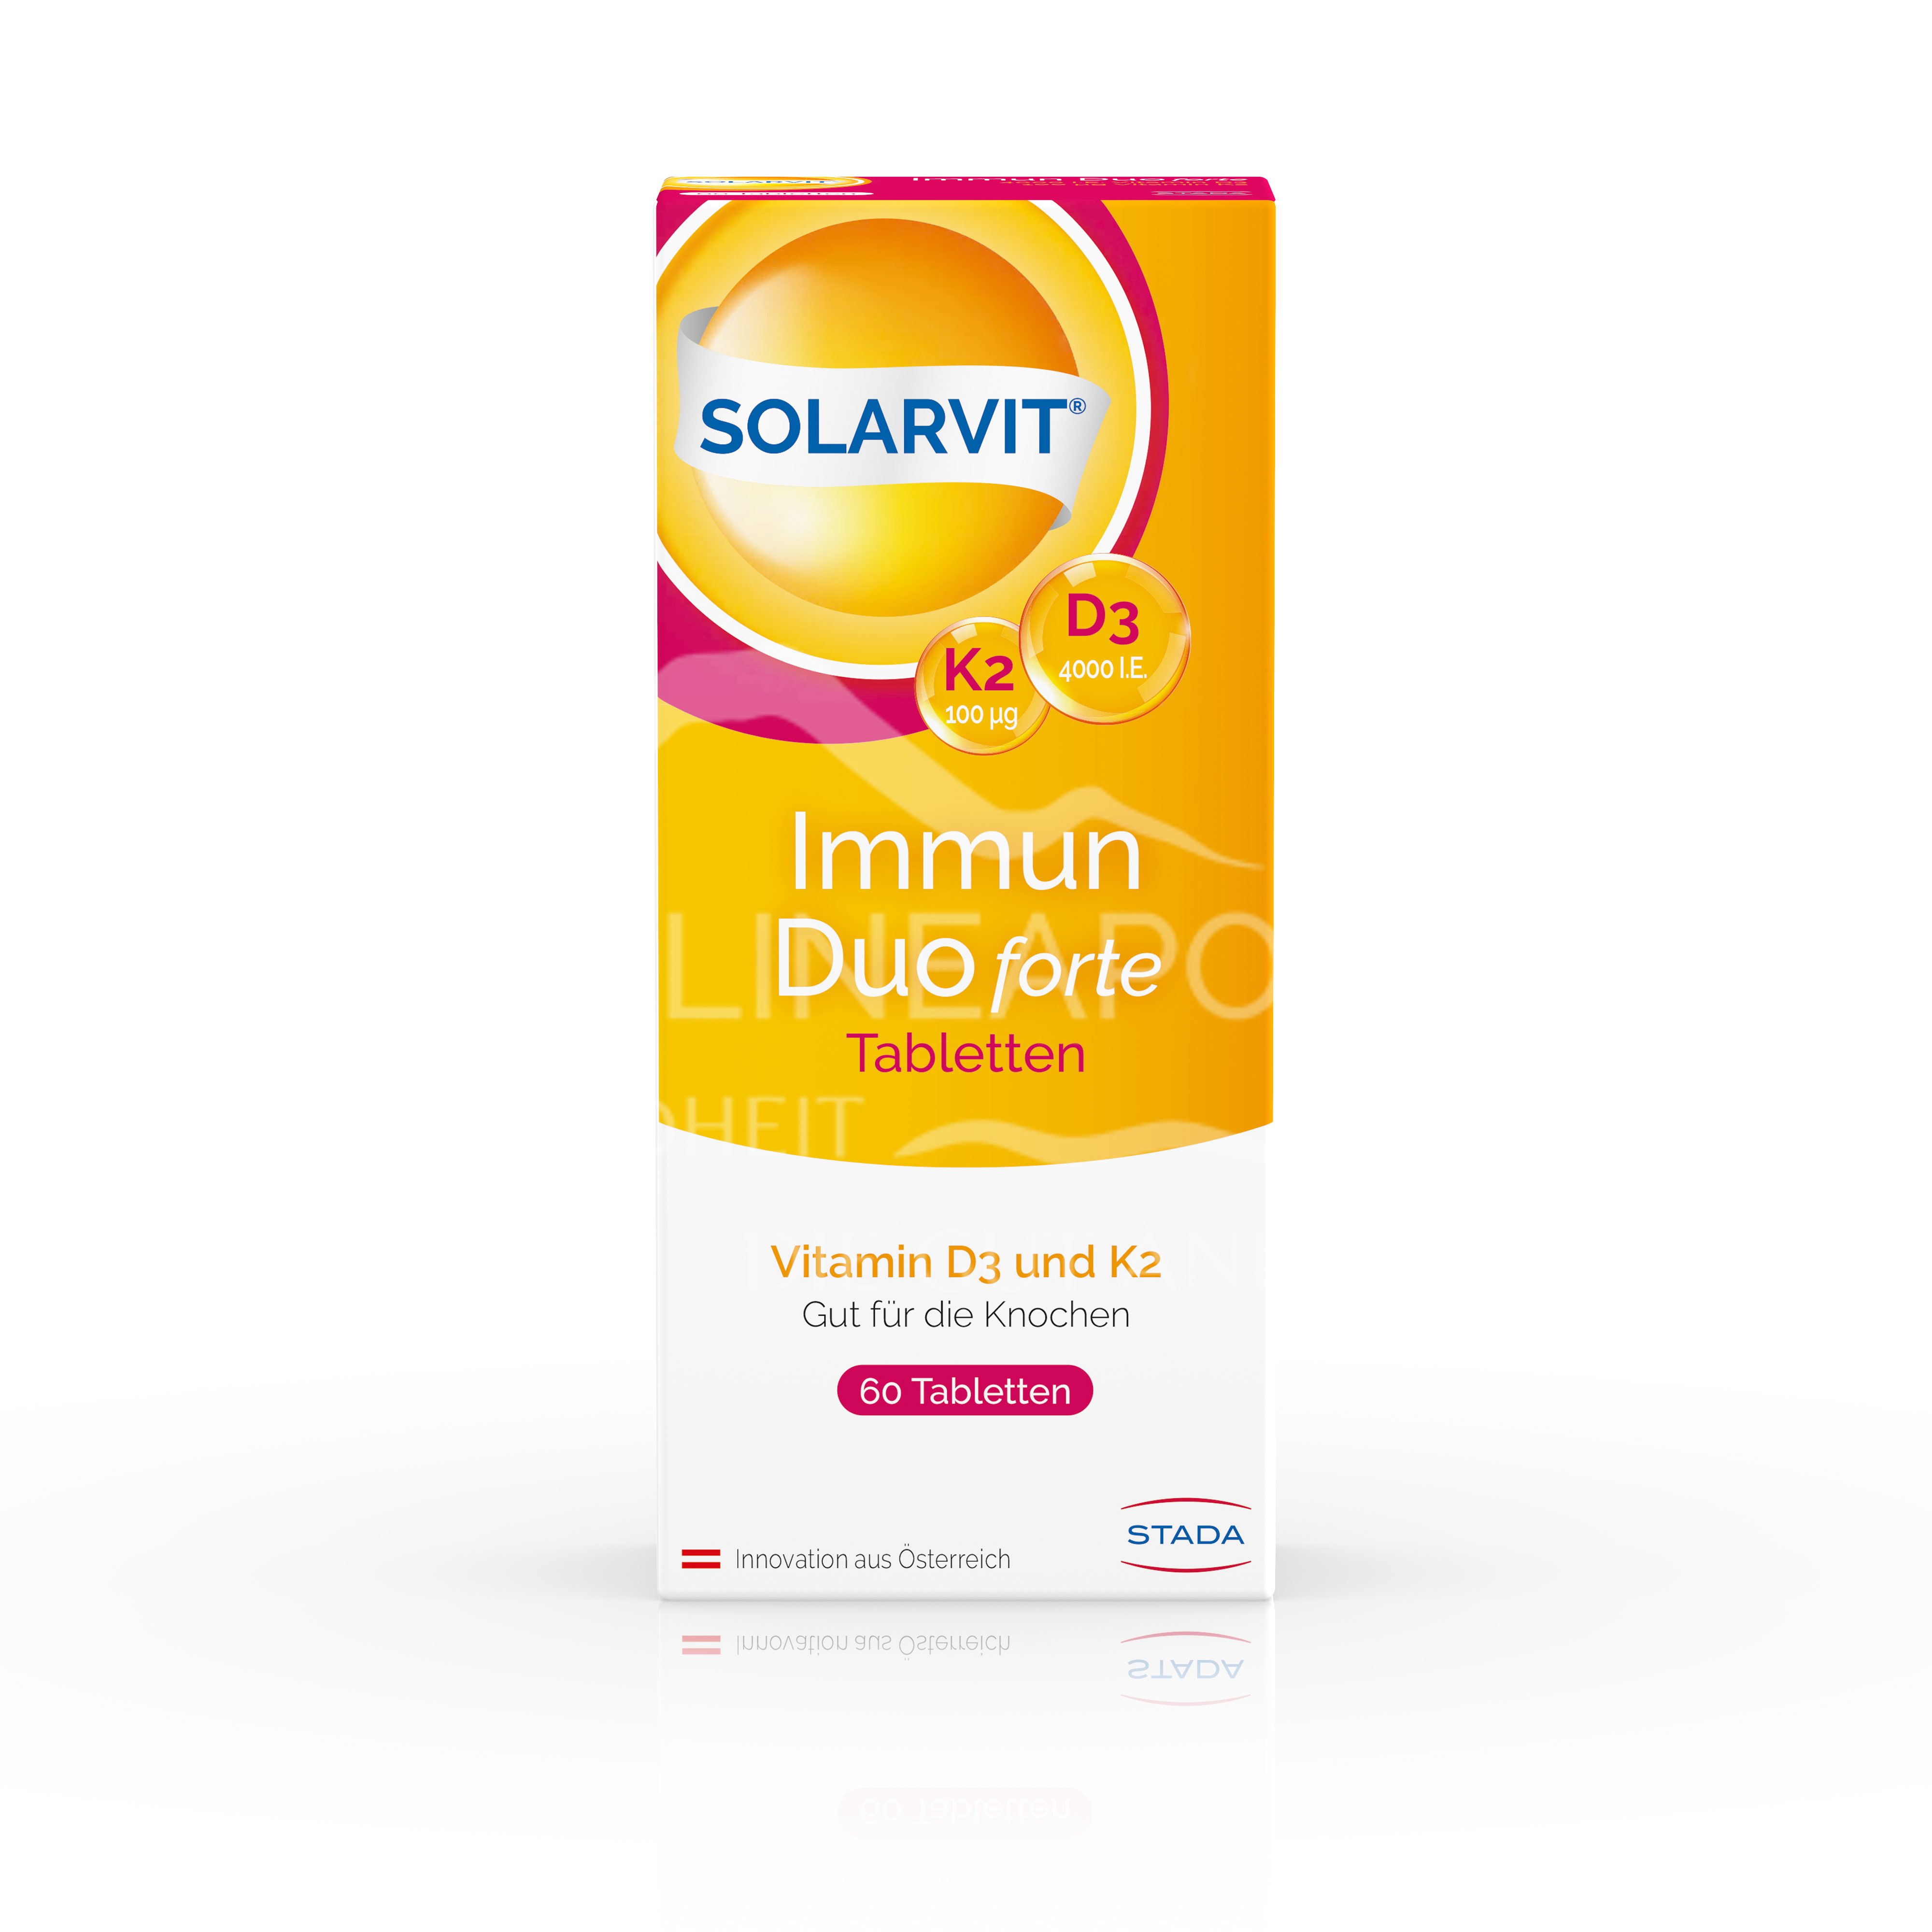 SOLARVIT® Immun Duo forte Tabletten D3 K2